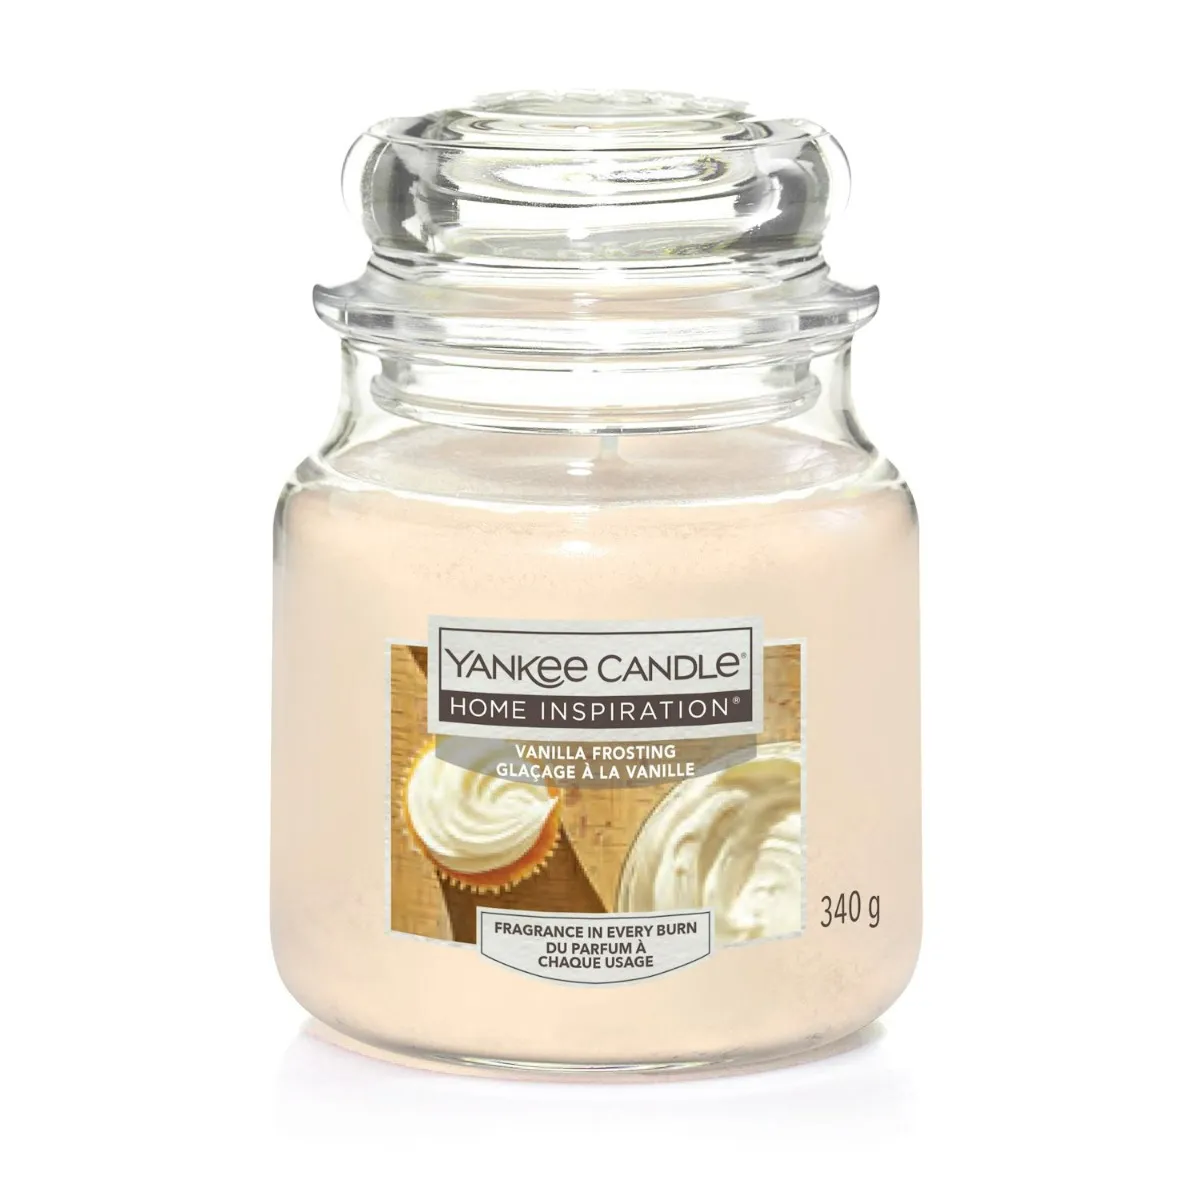 Yankee Candle Home Inspiration świeca zapachowa w szklanym słoiku Vanilla Frosting, 340 g